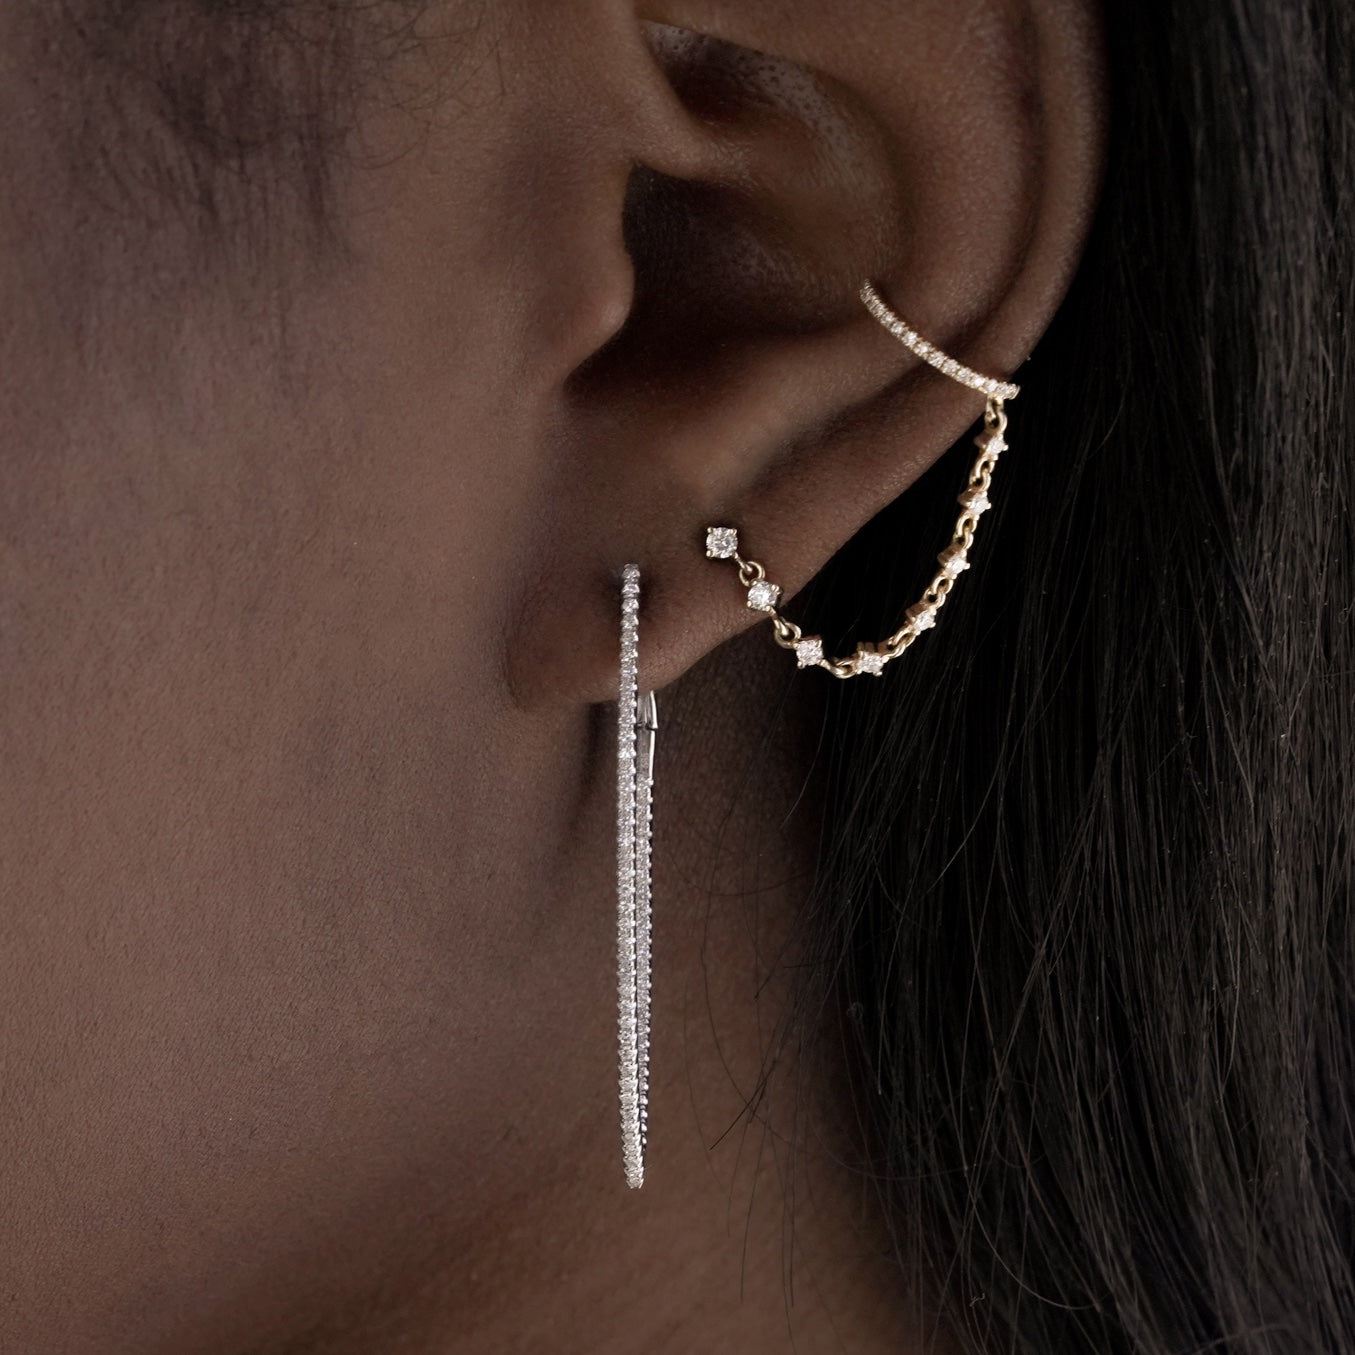 Minimalistisch Sterling Silver Chain Ear Climber.ear Cuff No - Etsy |  Earrings, Ear jewelry, Bts earrings